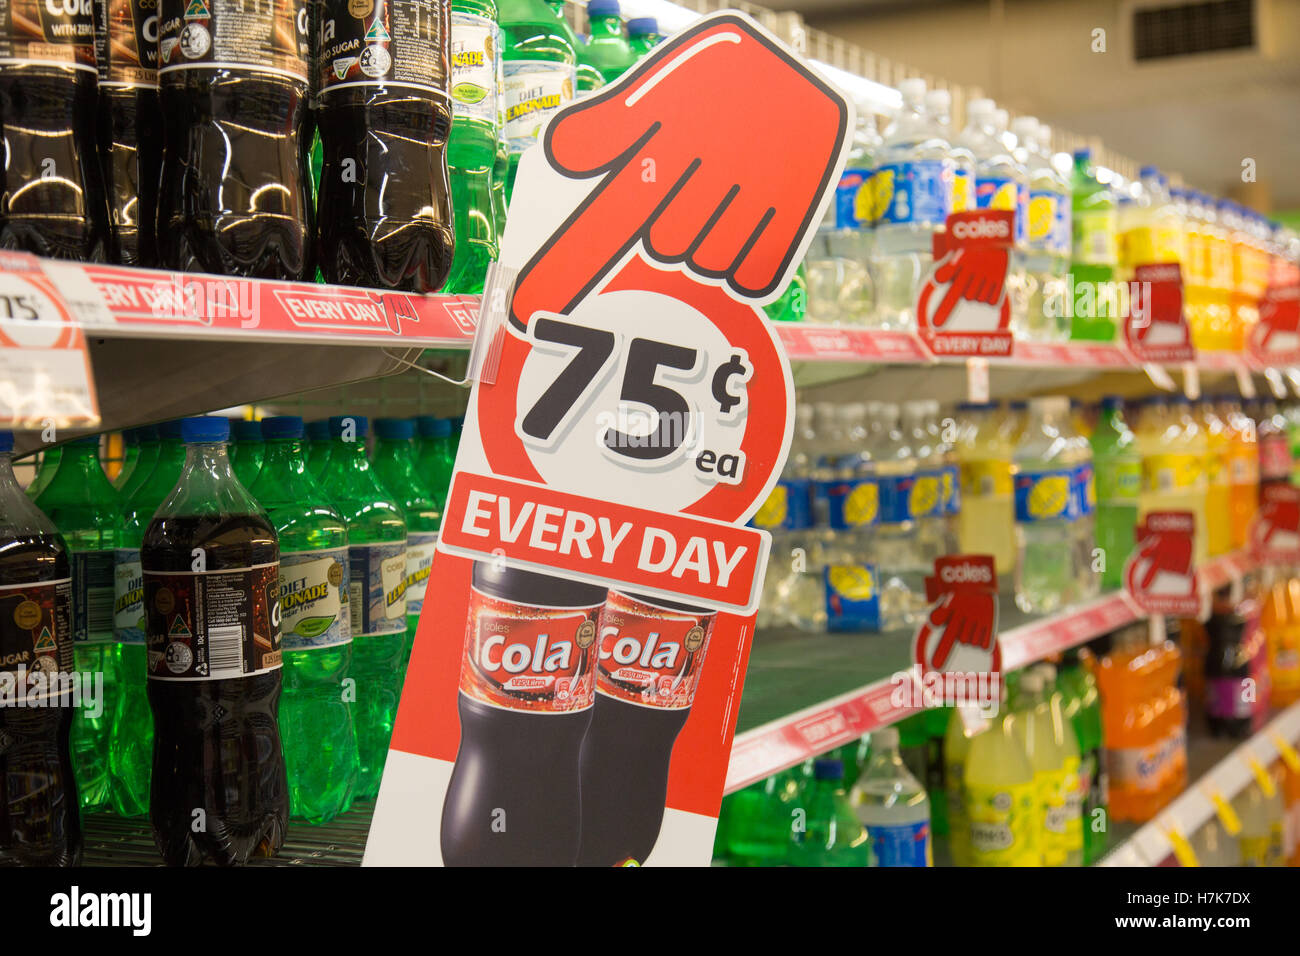 Supermercato Coles Australia mano rossa che indica prezzi più bassi per bevande cola, Sydney, Australia interno del supermercato Foto Stock